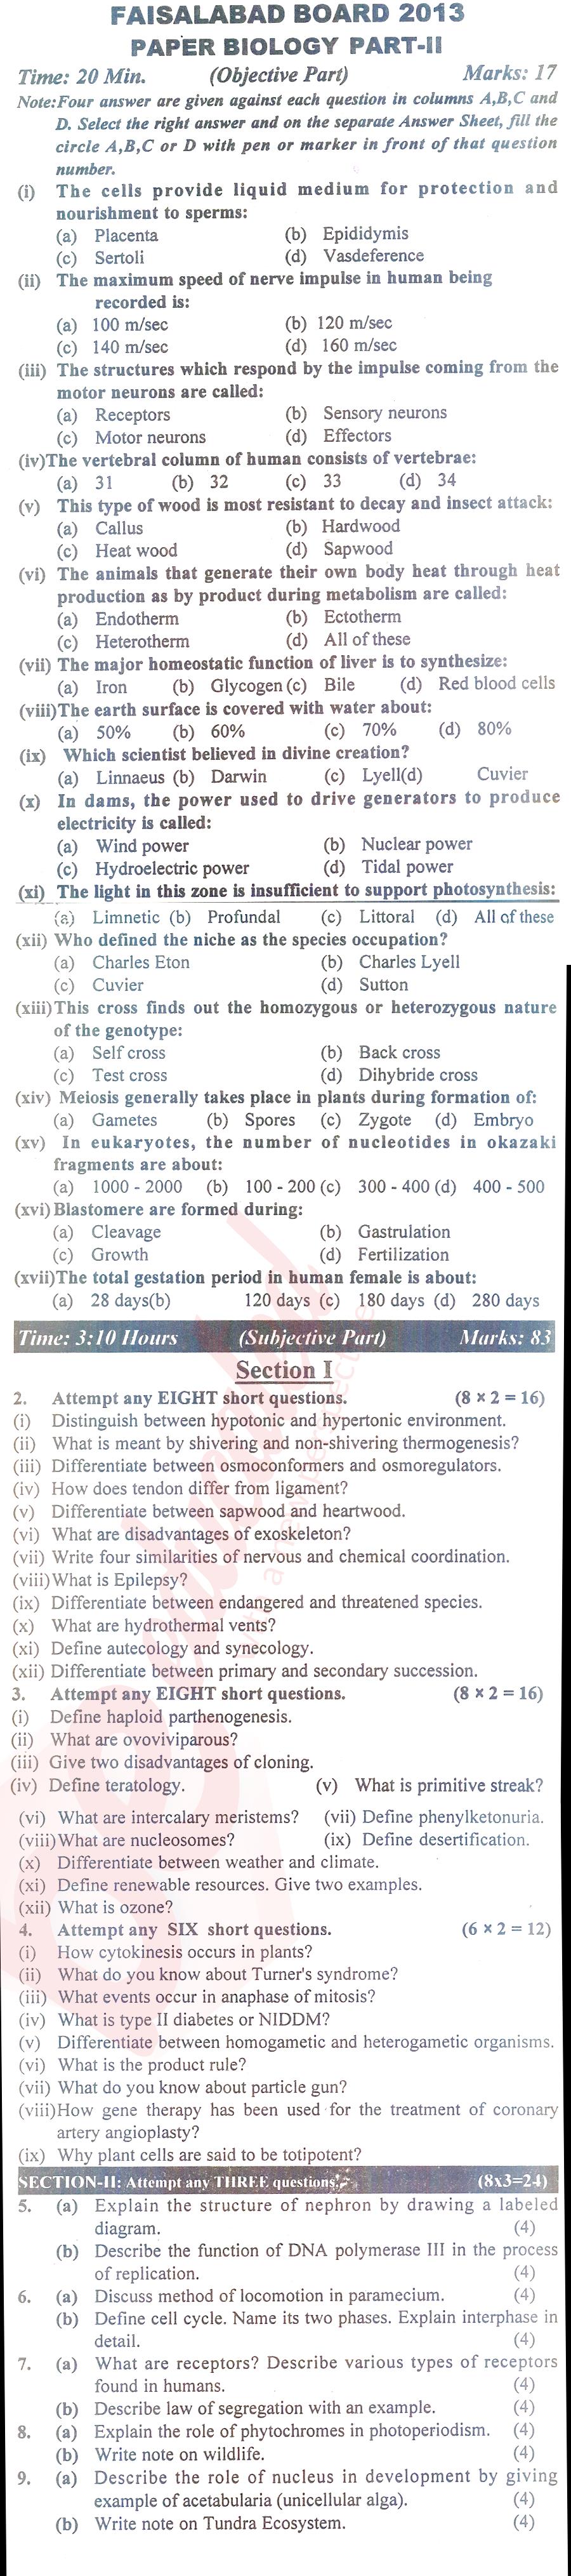 Biology FSC Part 2 Past Paper Group 1 BISE Faisalabad 2013